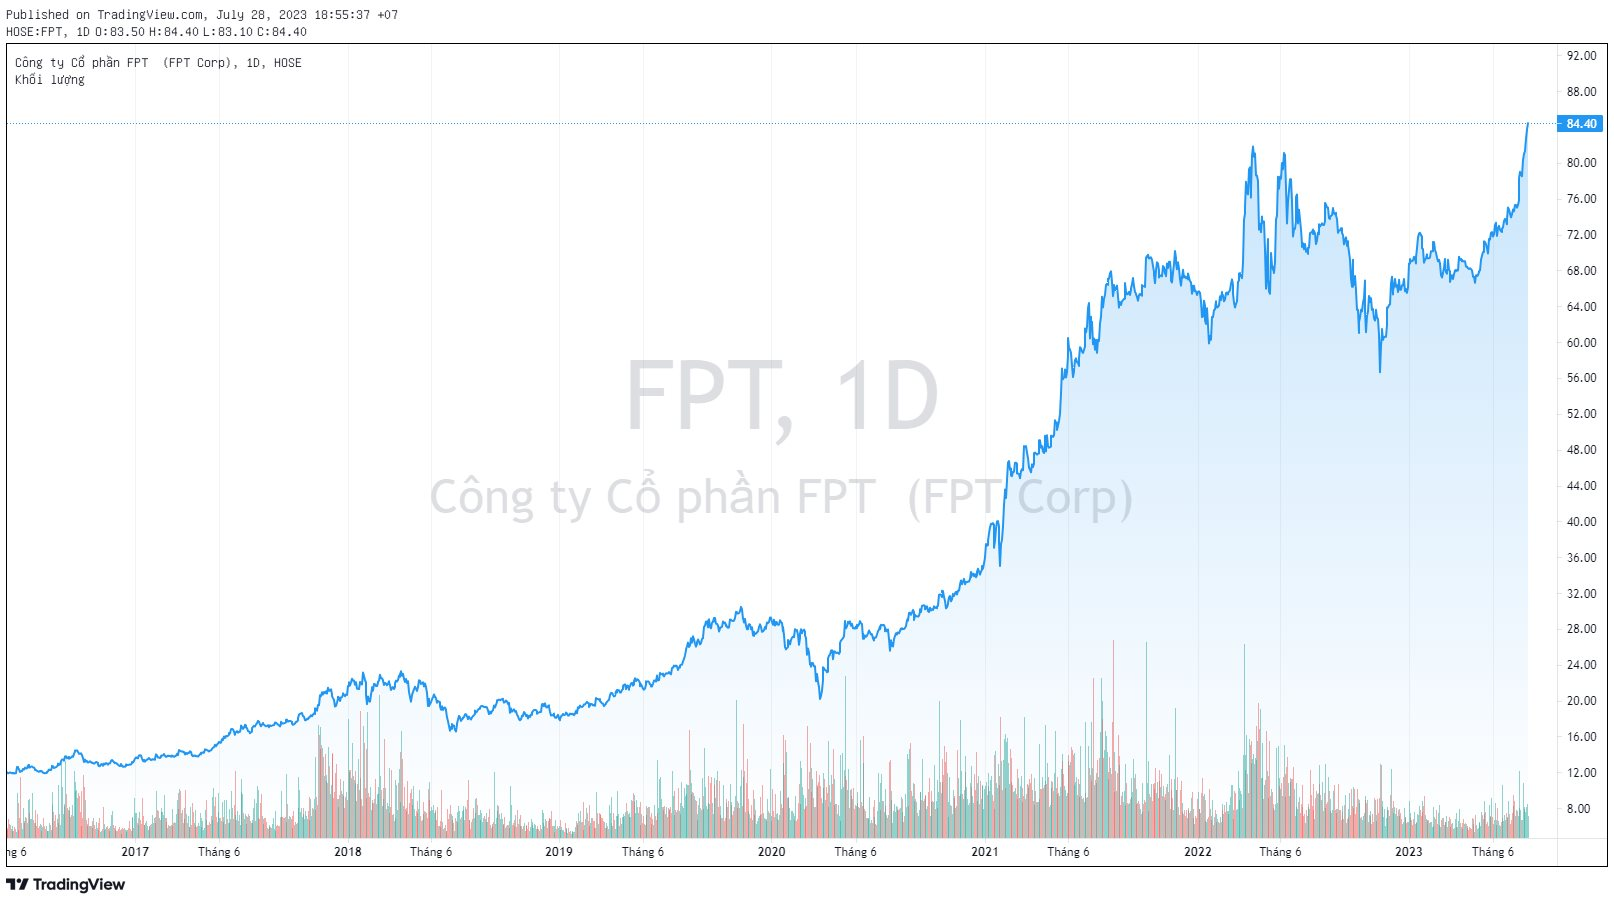 FPT liên tiếp phá đỉnh lịch sử, vốn hóa vượt mốc 100.000 tỷ đồng - Ảnh 1.